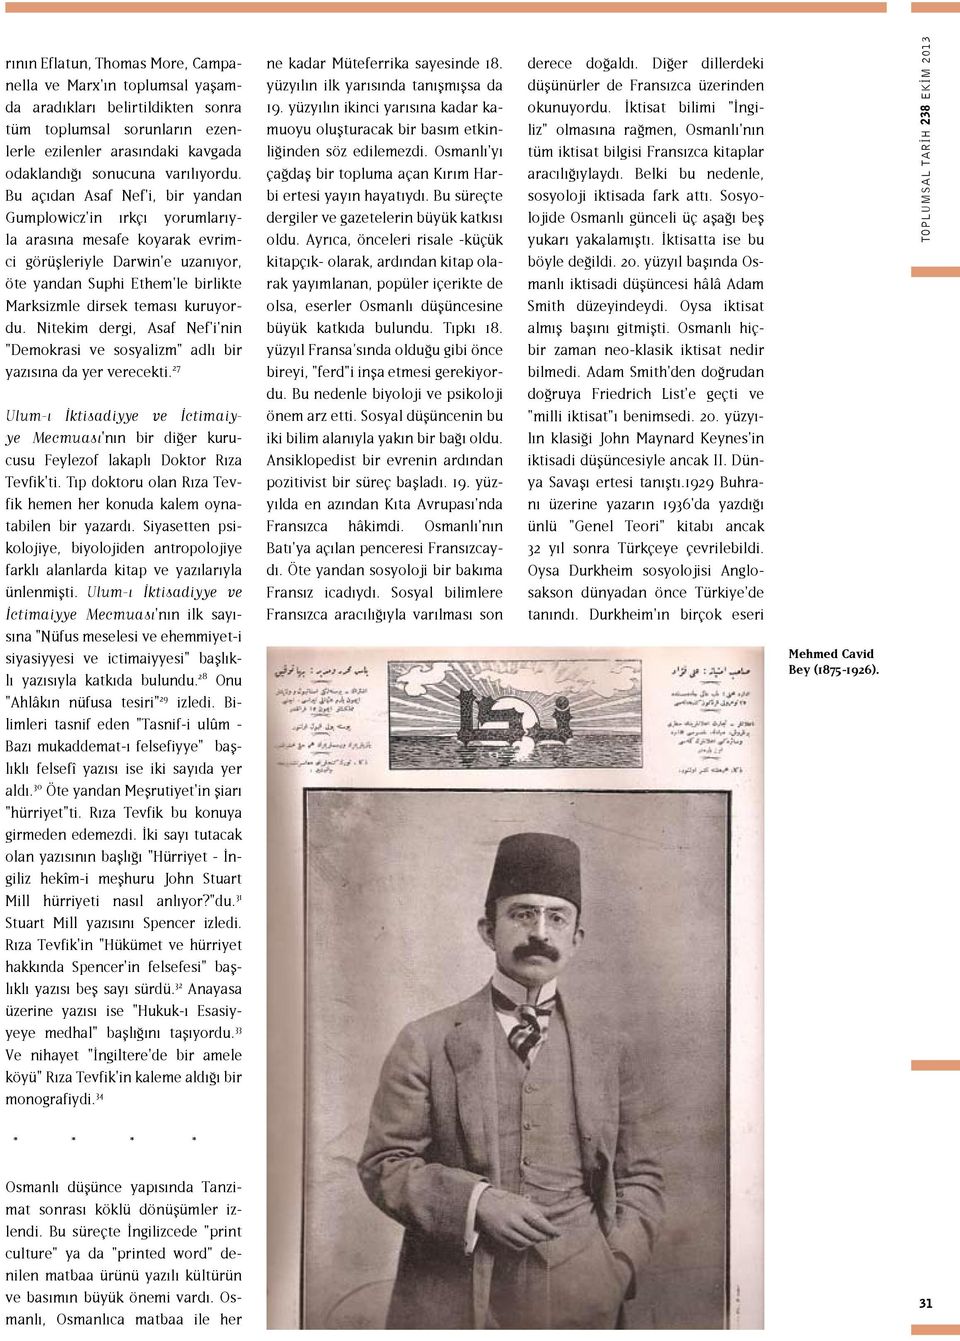 Nitekim dergi, Asaf Nef'i'nin "Demokrasi ve sosyalizm" adlı bir yazısına da yer verecekti. 27 Mecmuası'nın bir diğer kurucusu Feylezof lakaplı Doktor Rıza Tevfik'ti.